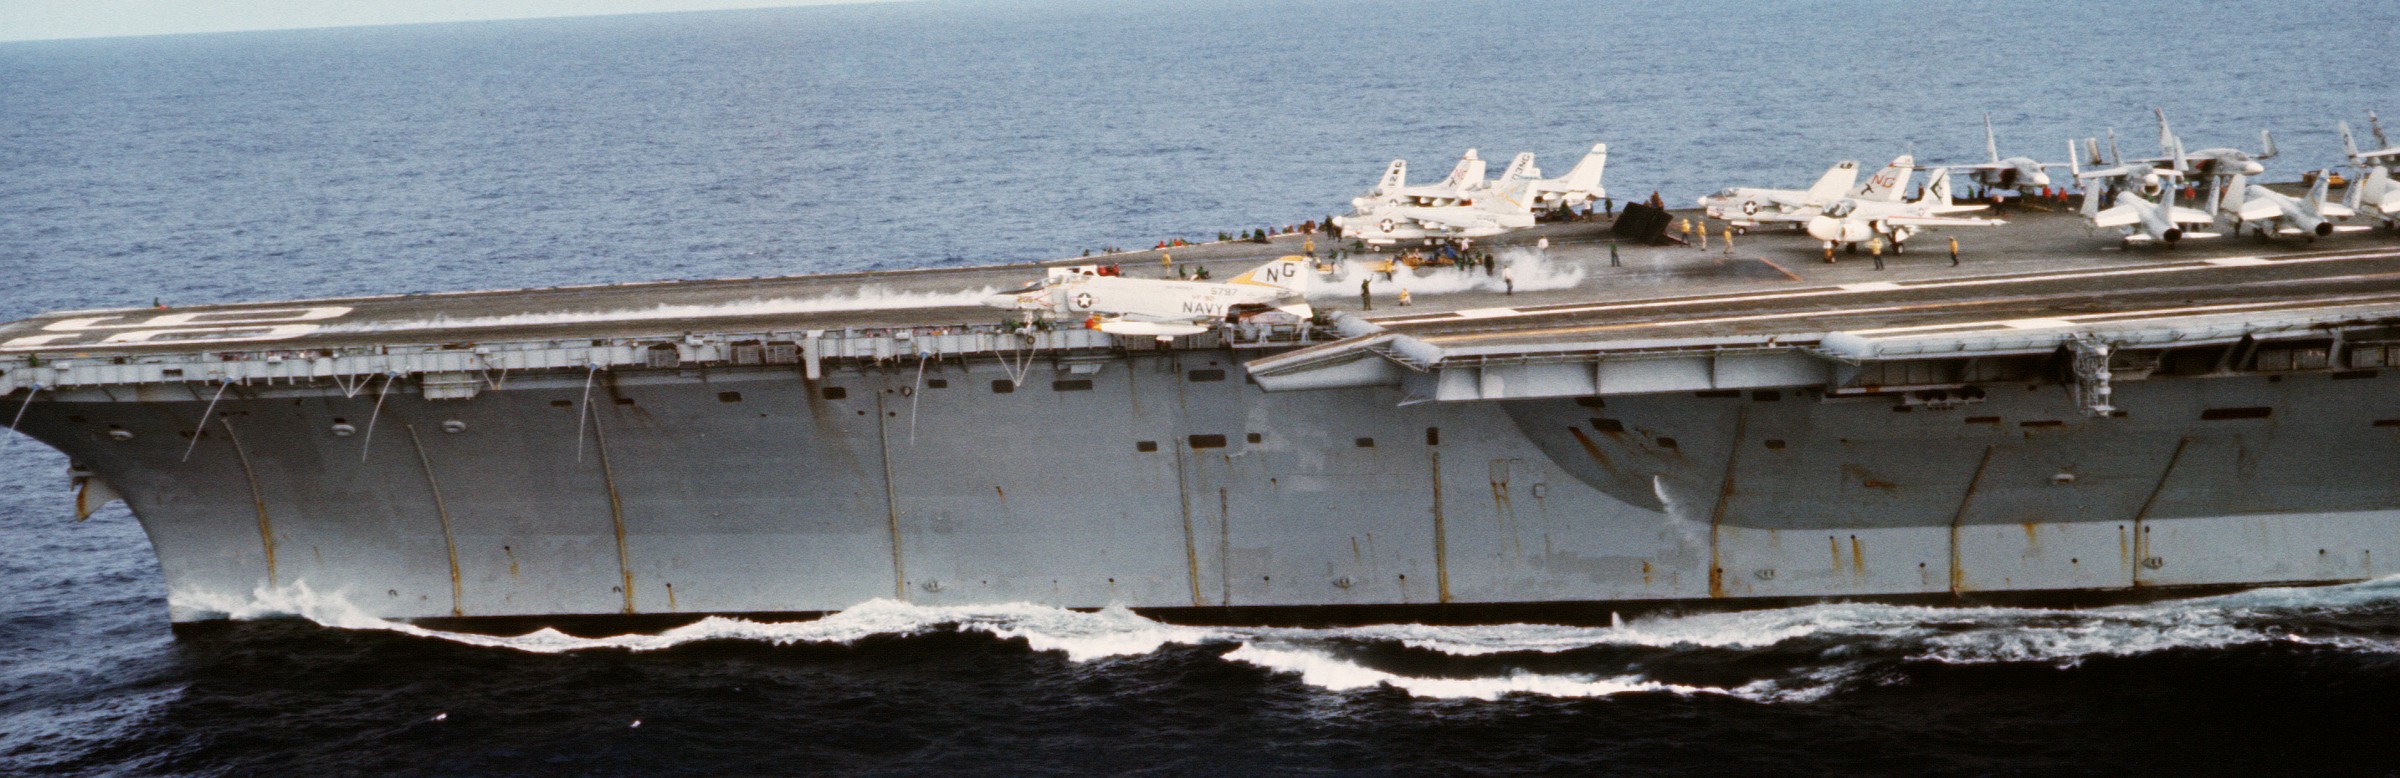 cv-66 uss america kitty hawk class aircraft carrier air wing cvw-9 us navy 14